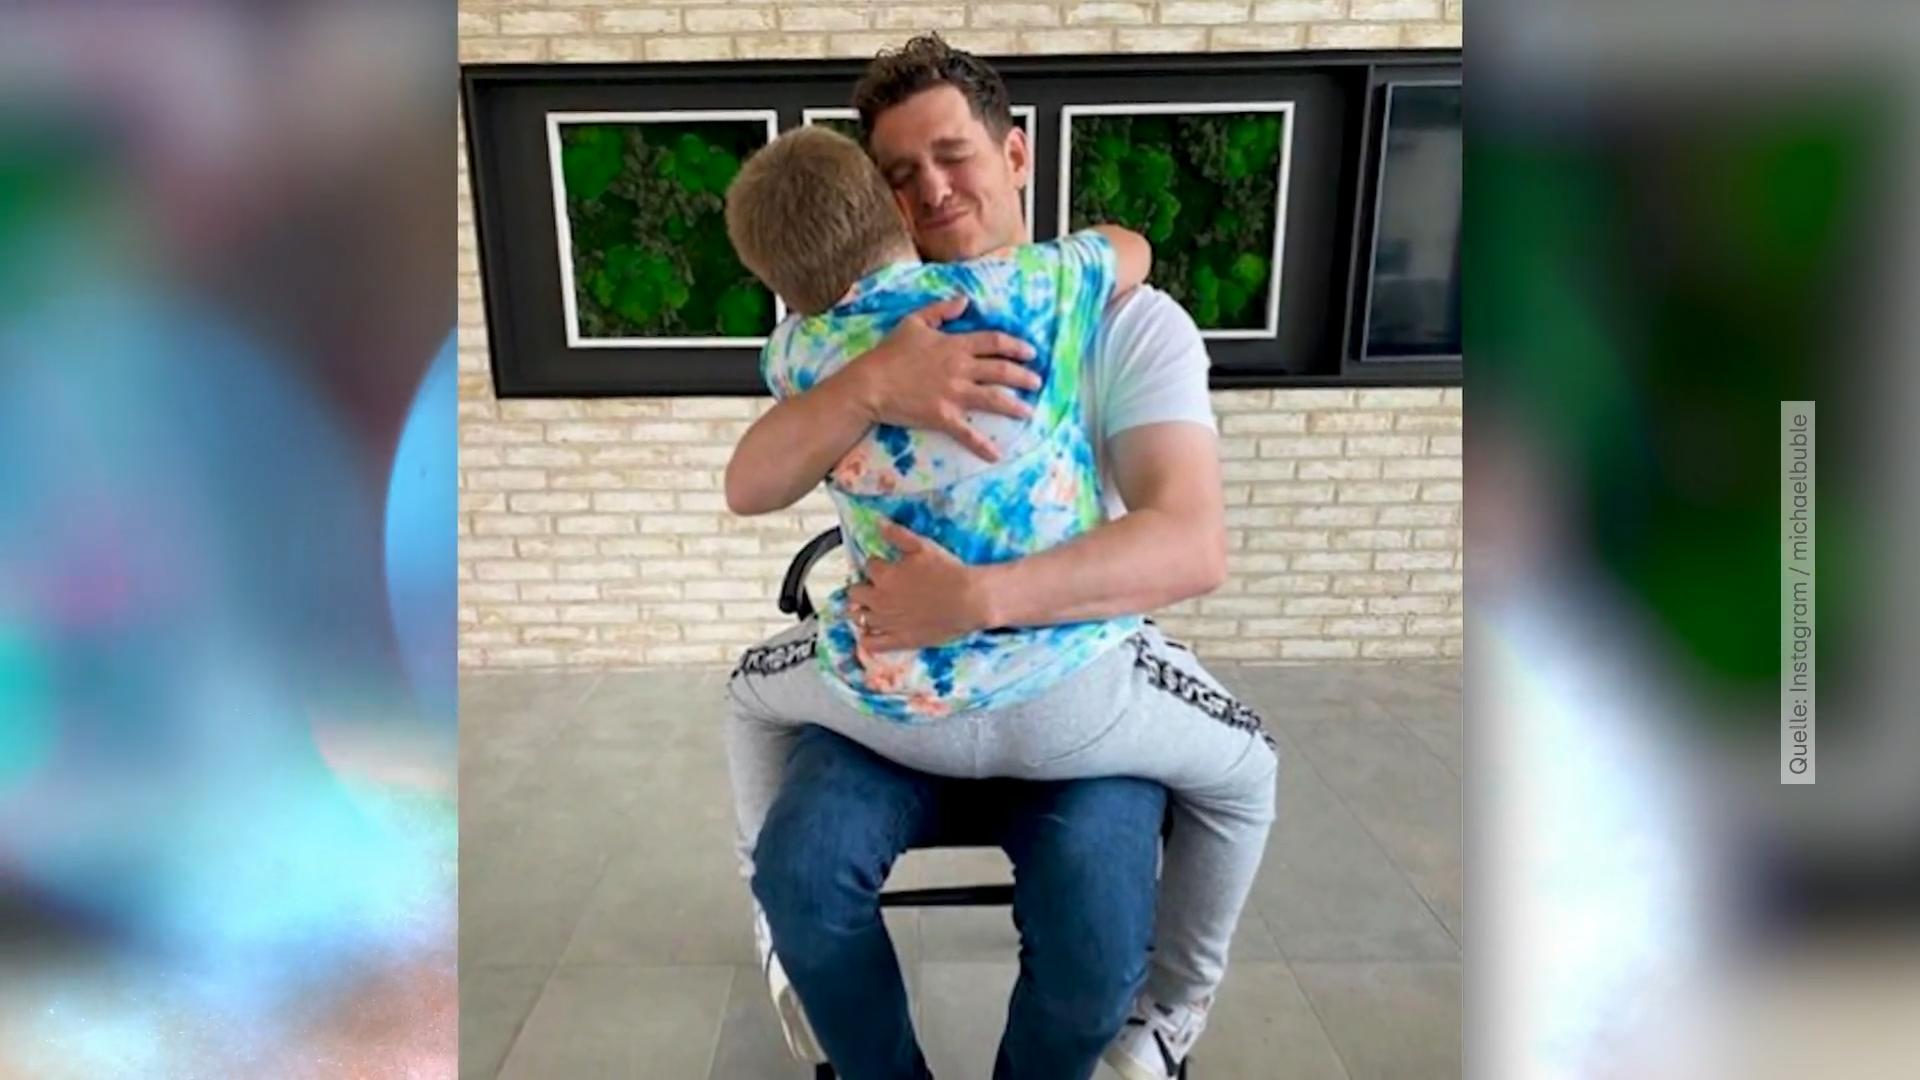 Krebserkrankung seines Sohnes hat alles verändert Michael Bublé